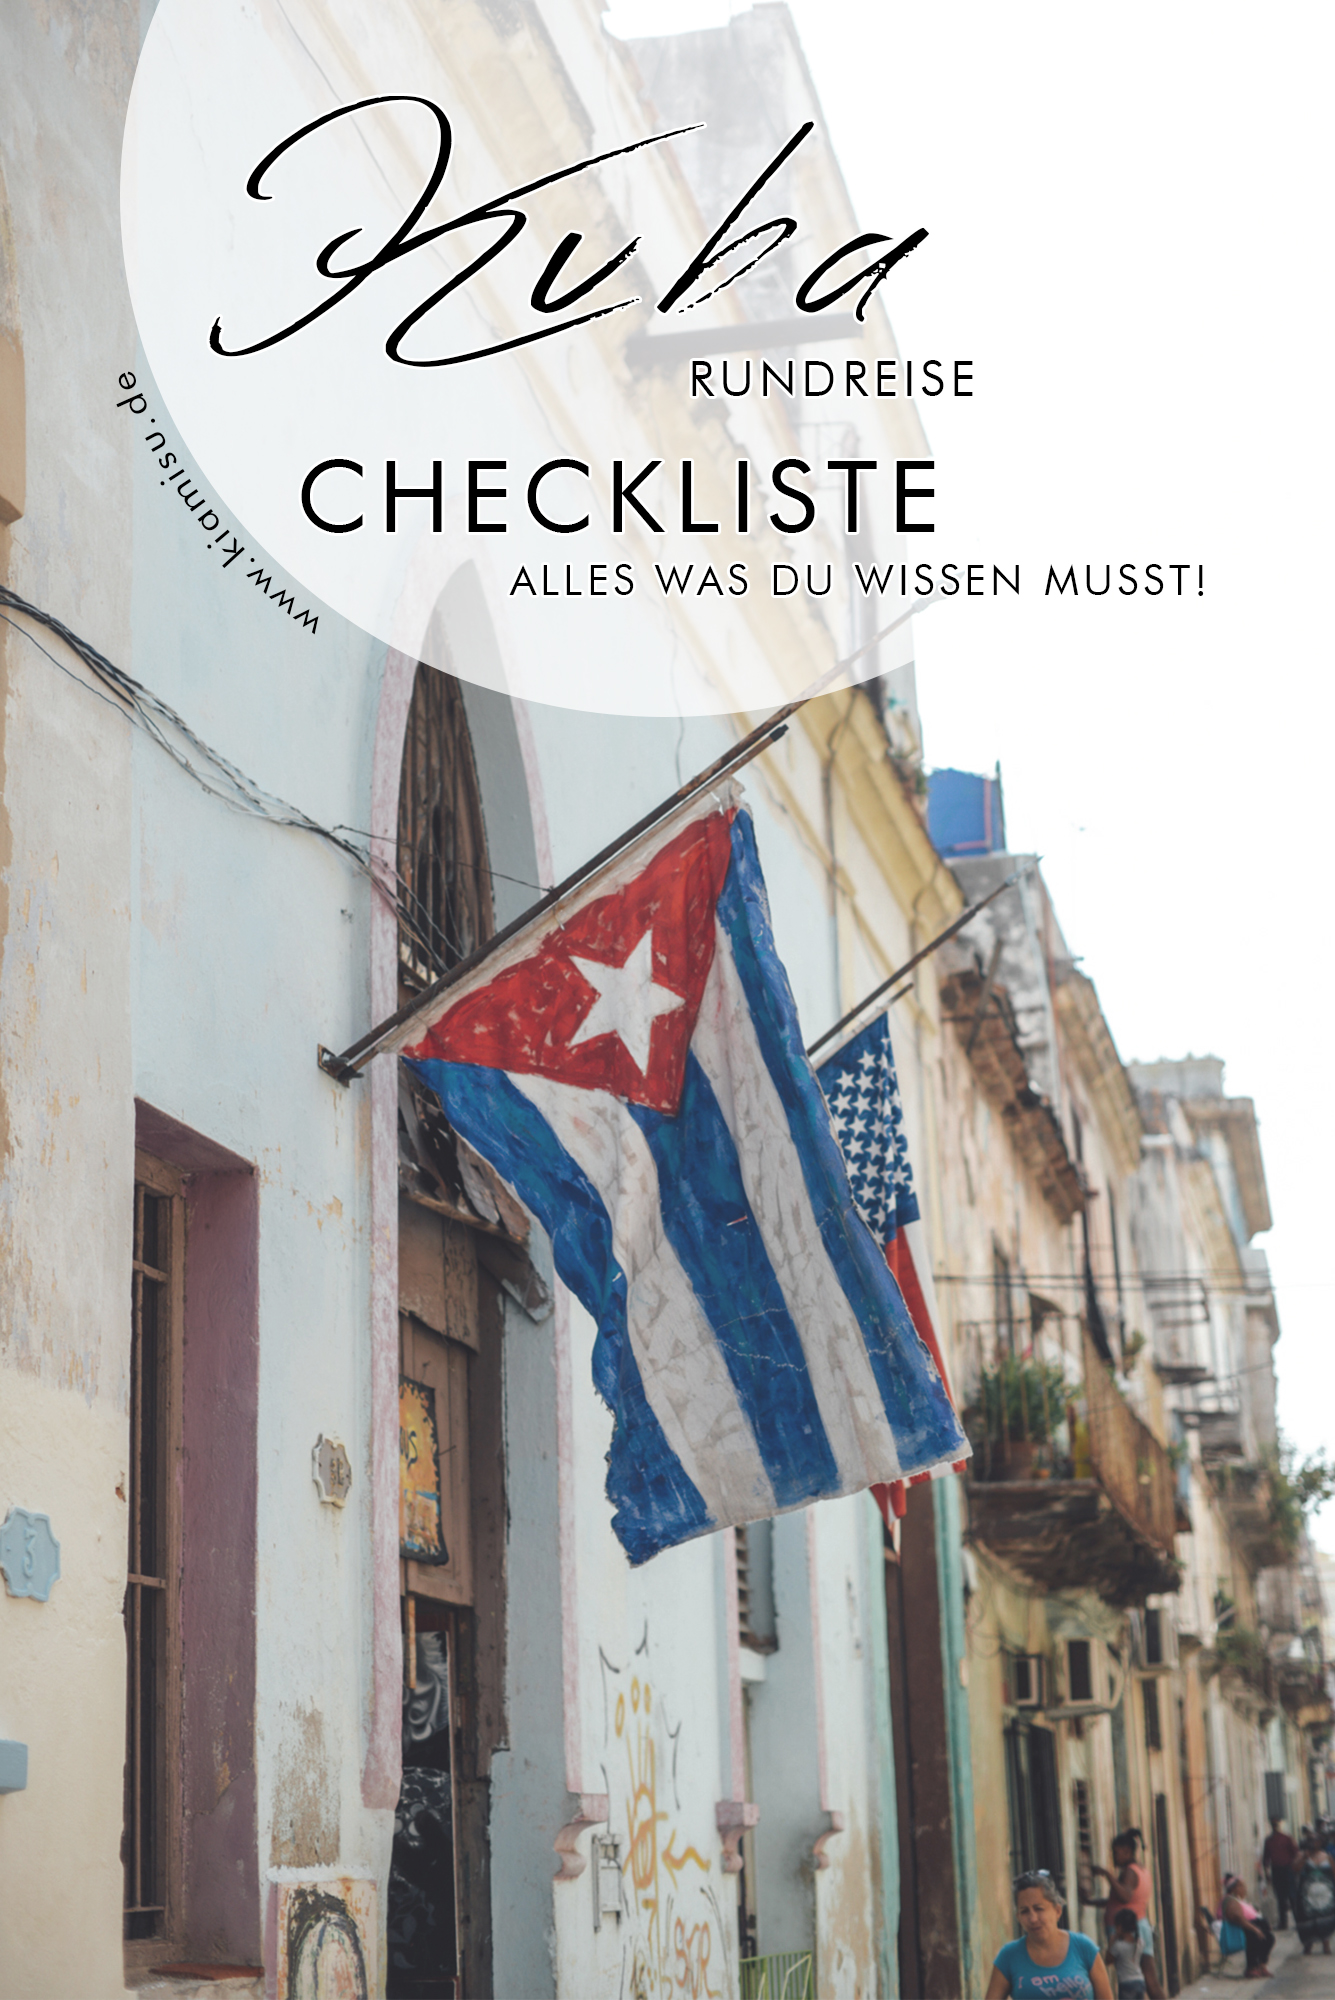 Kuba Rundreise organisieren Tipps und Tricks für deine